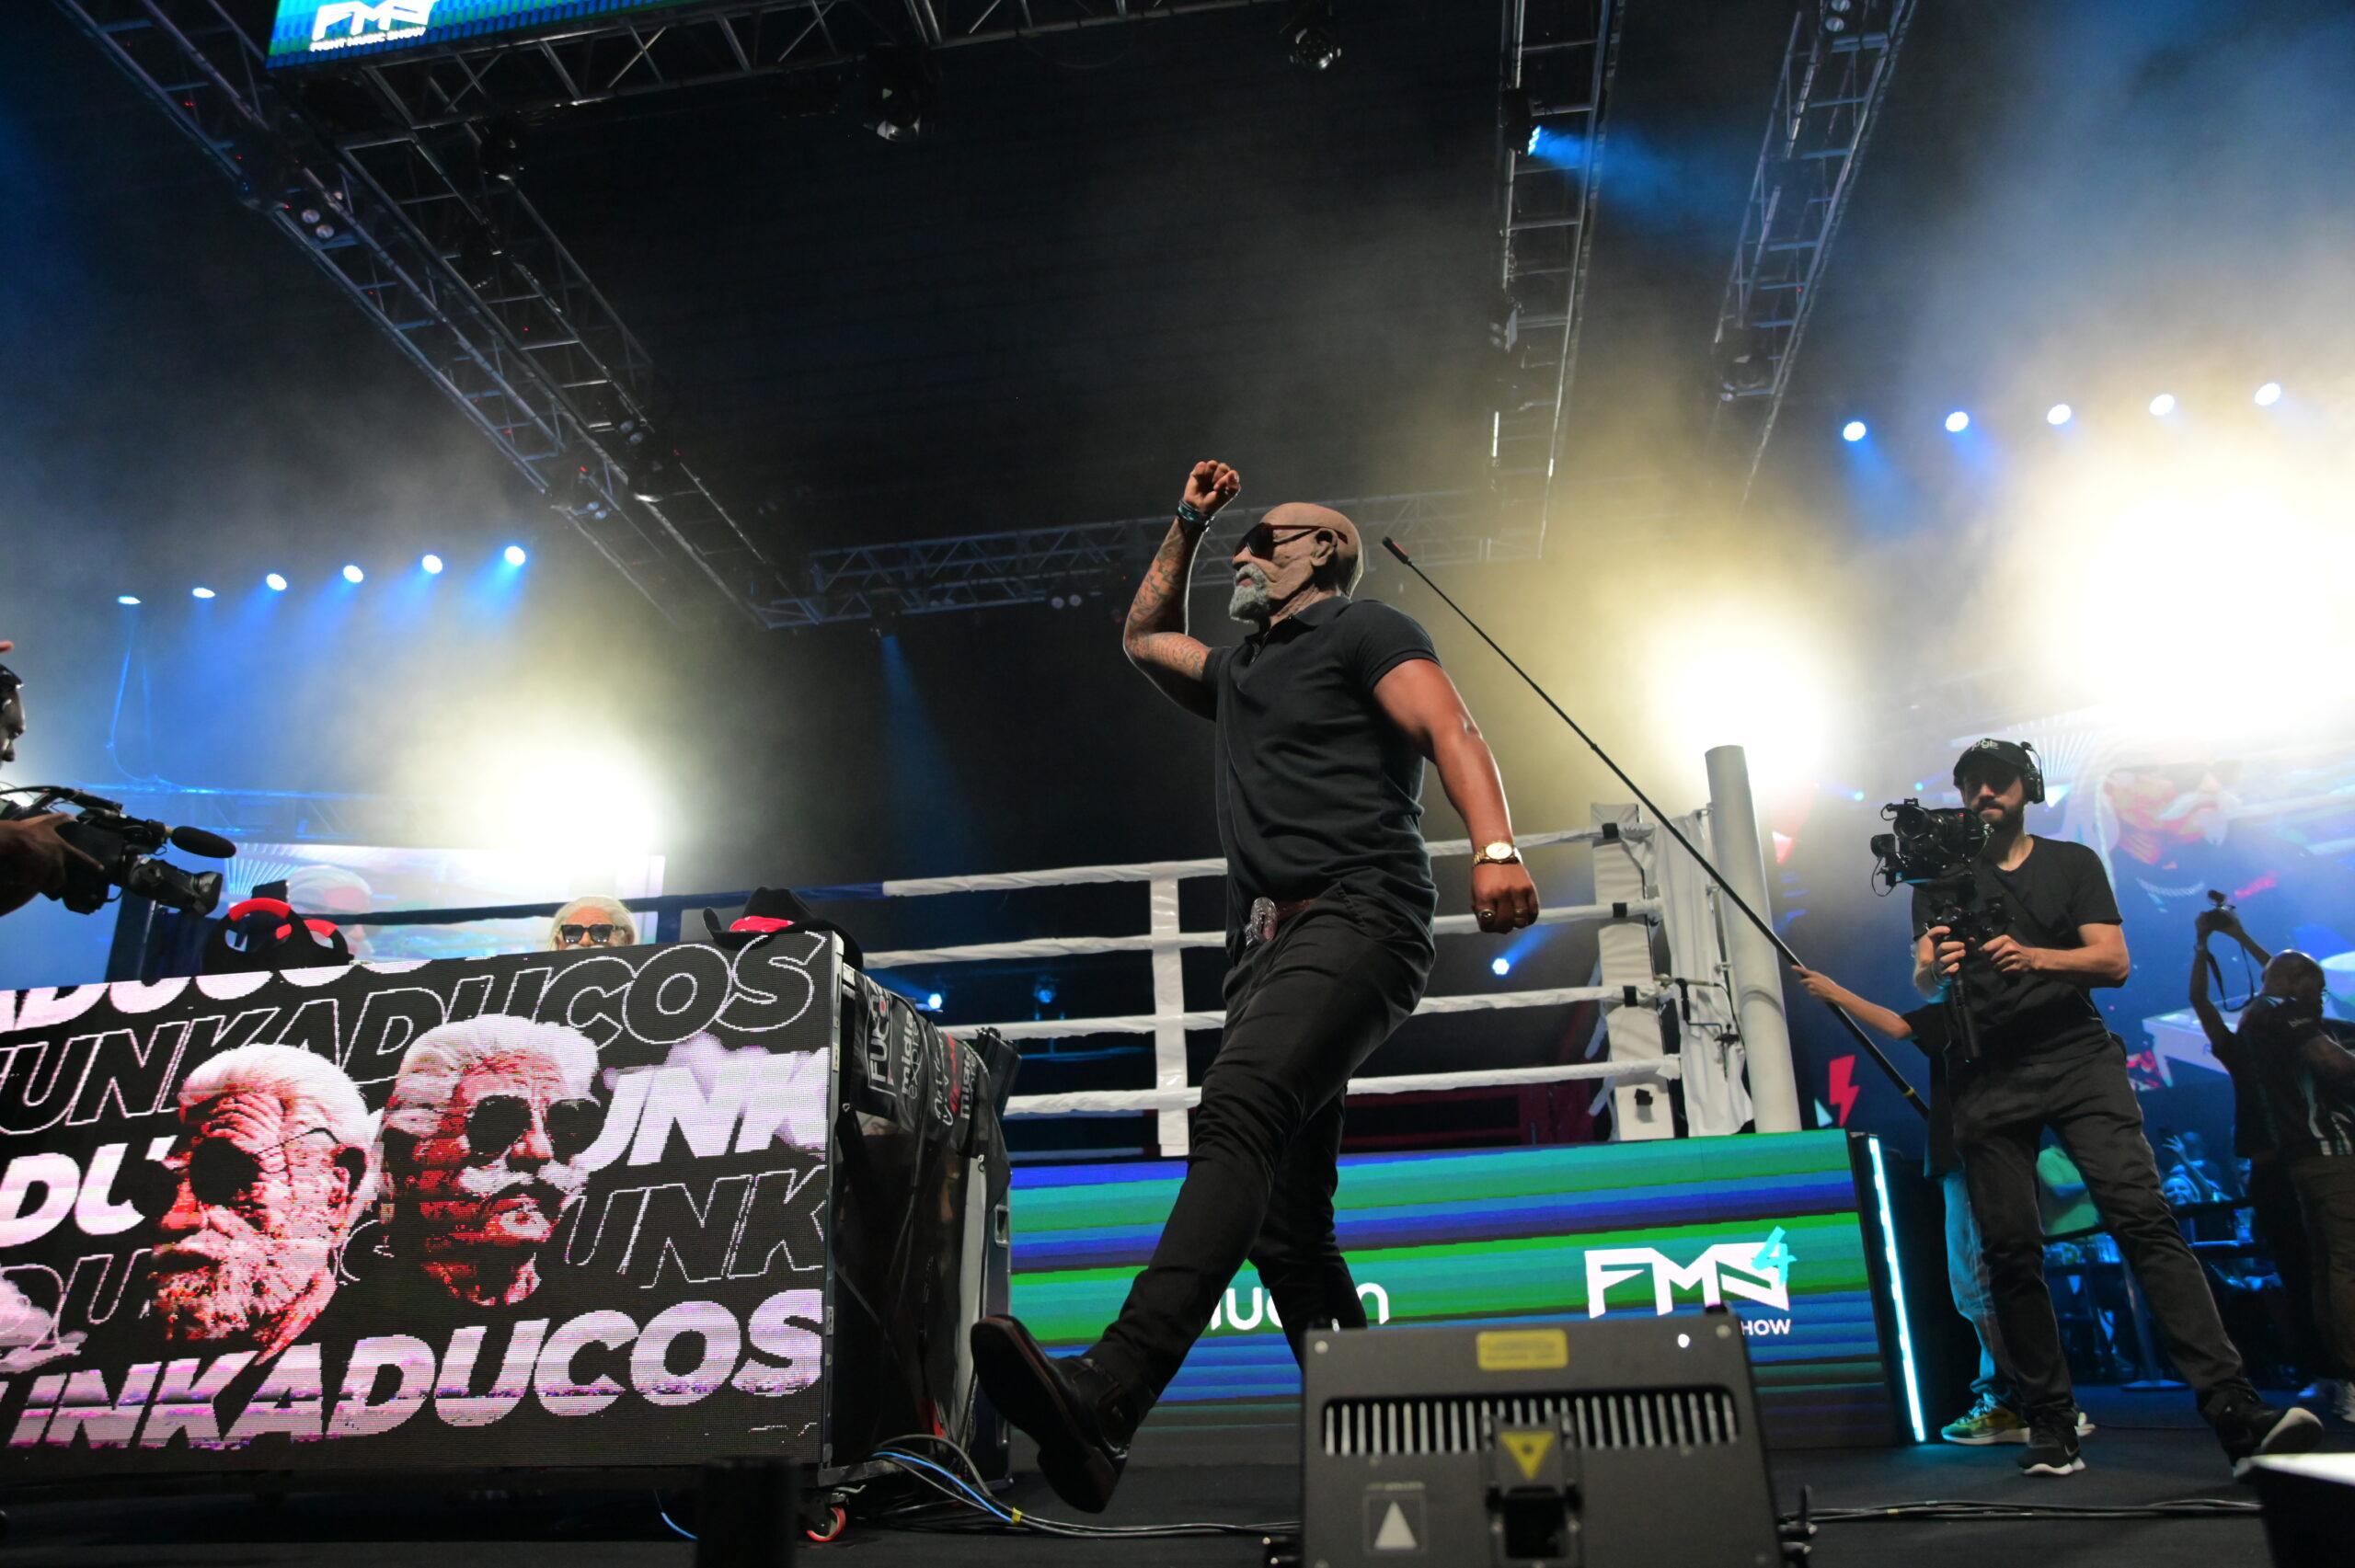 Funkaducos, “Os Véio da Revoada”, agitam Fight Music Show e conquistam público de mais de 5 mil pessoas